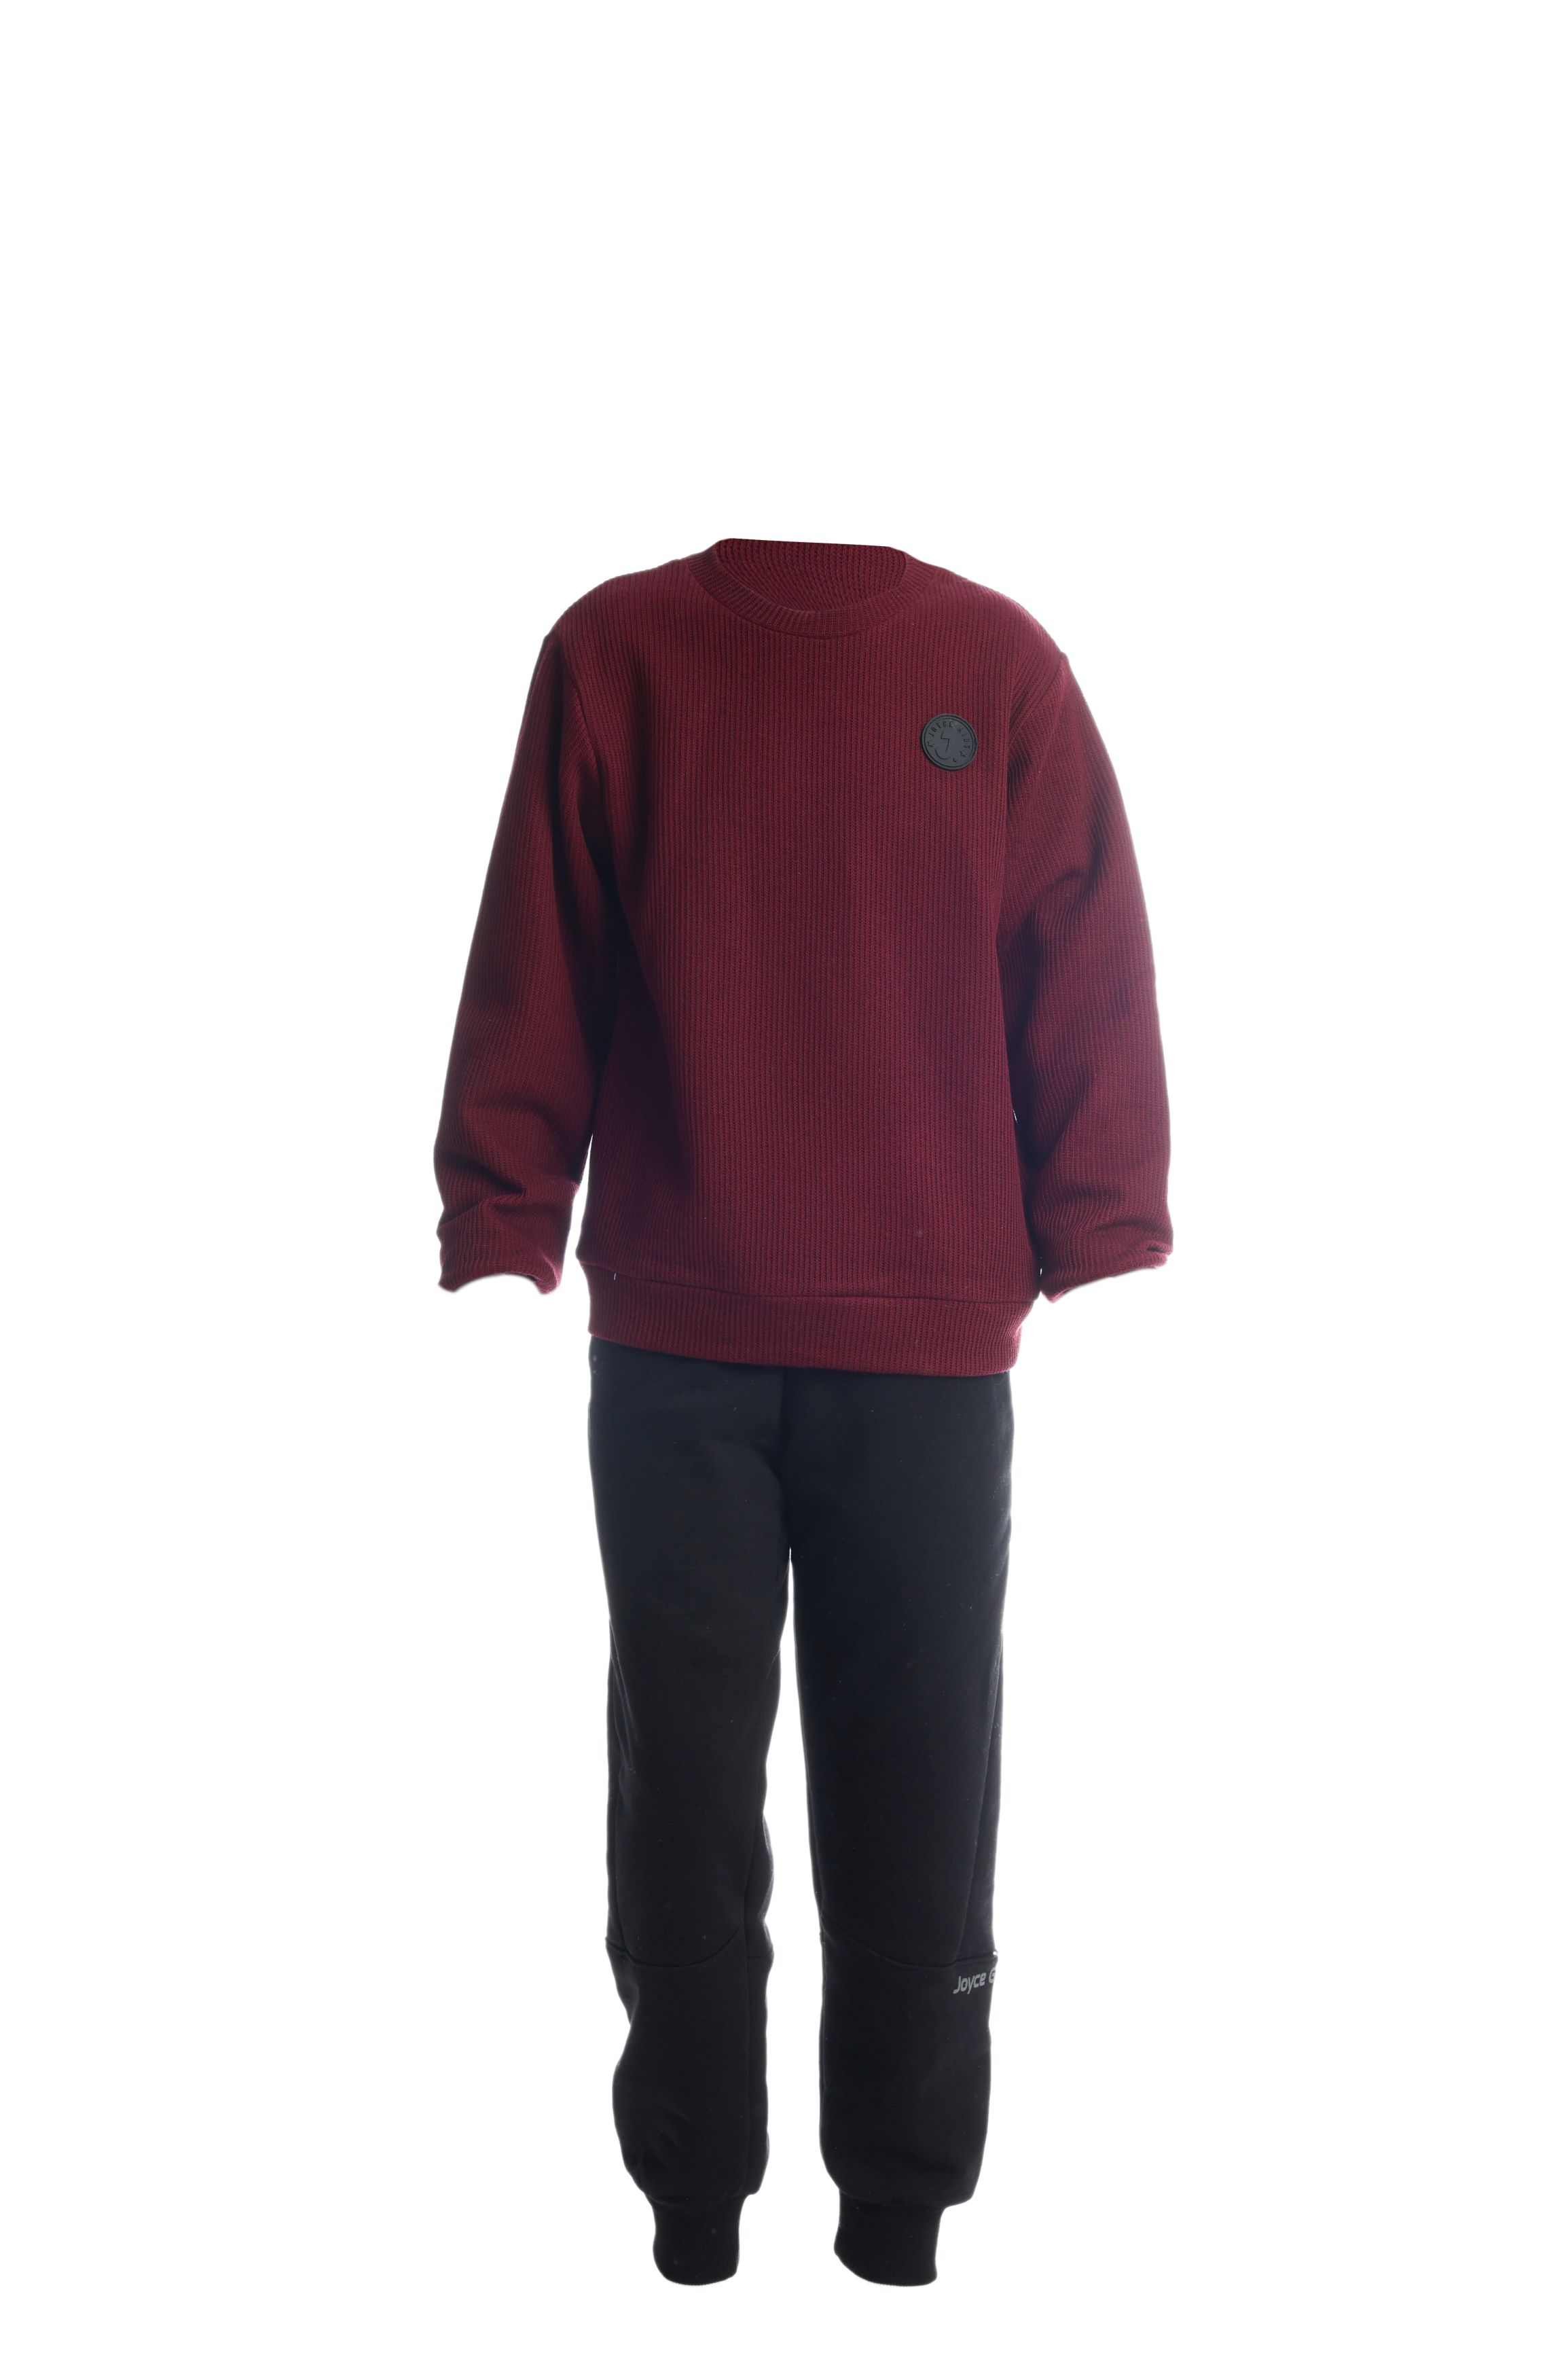 Chlapecké bavlněné tričko/svetr "TAB"/Zelená, vínová Barva: Vínová, Velikost: vel. 10 (138/144 cm)